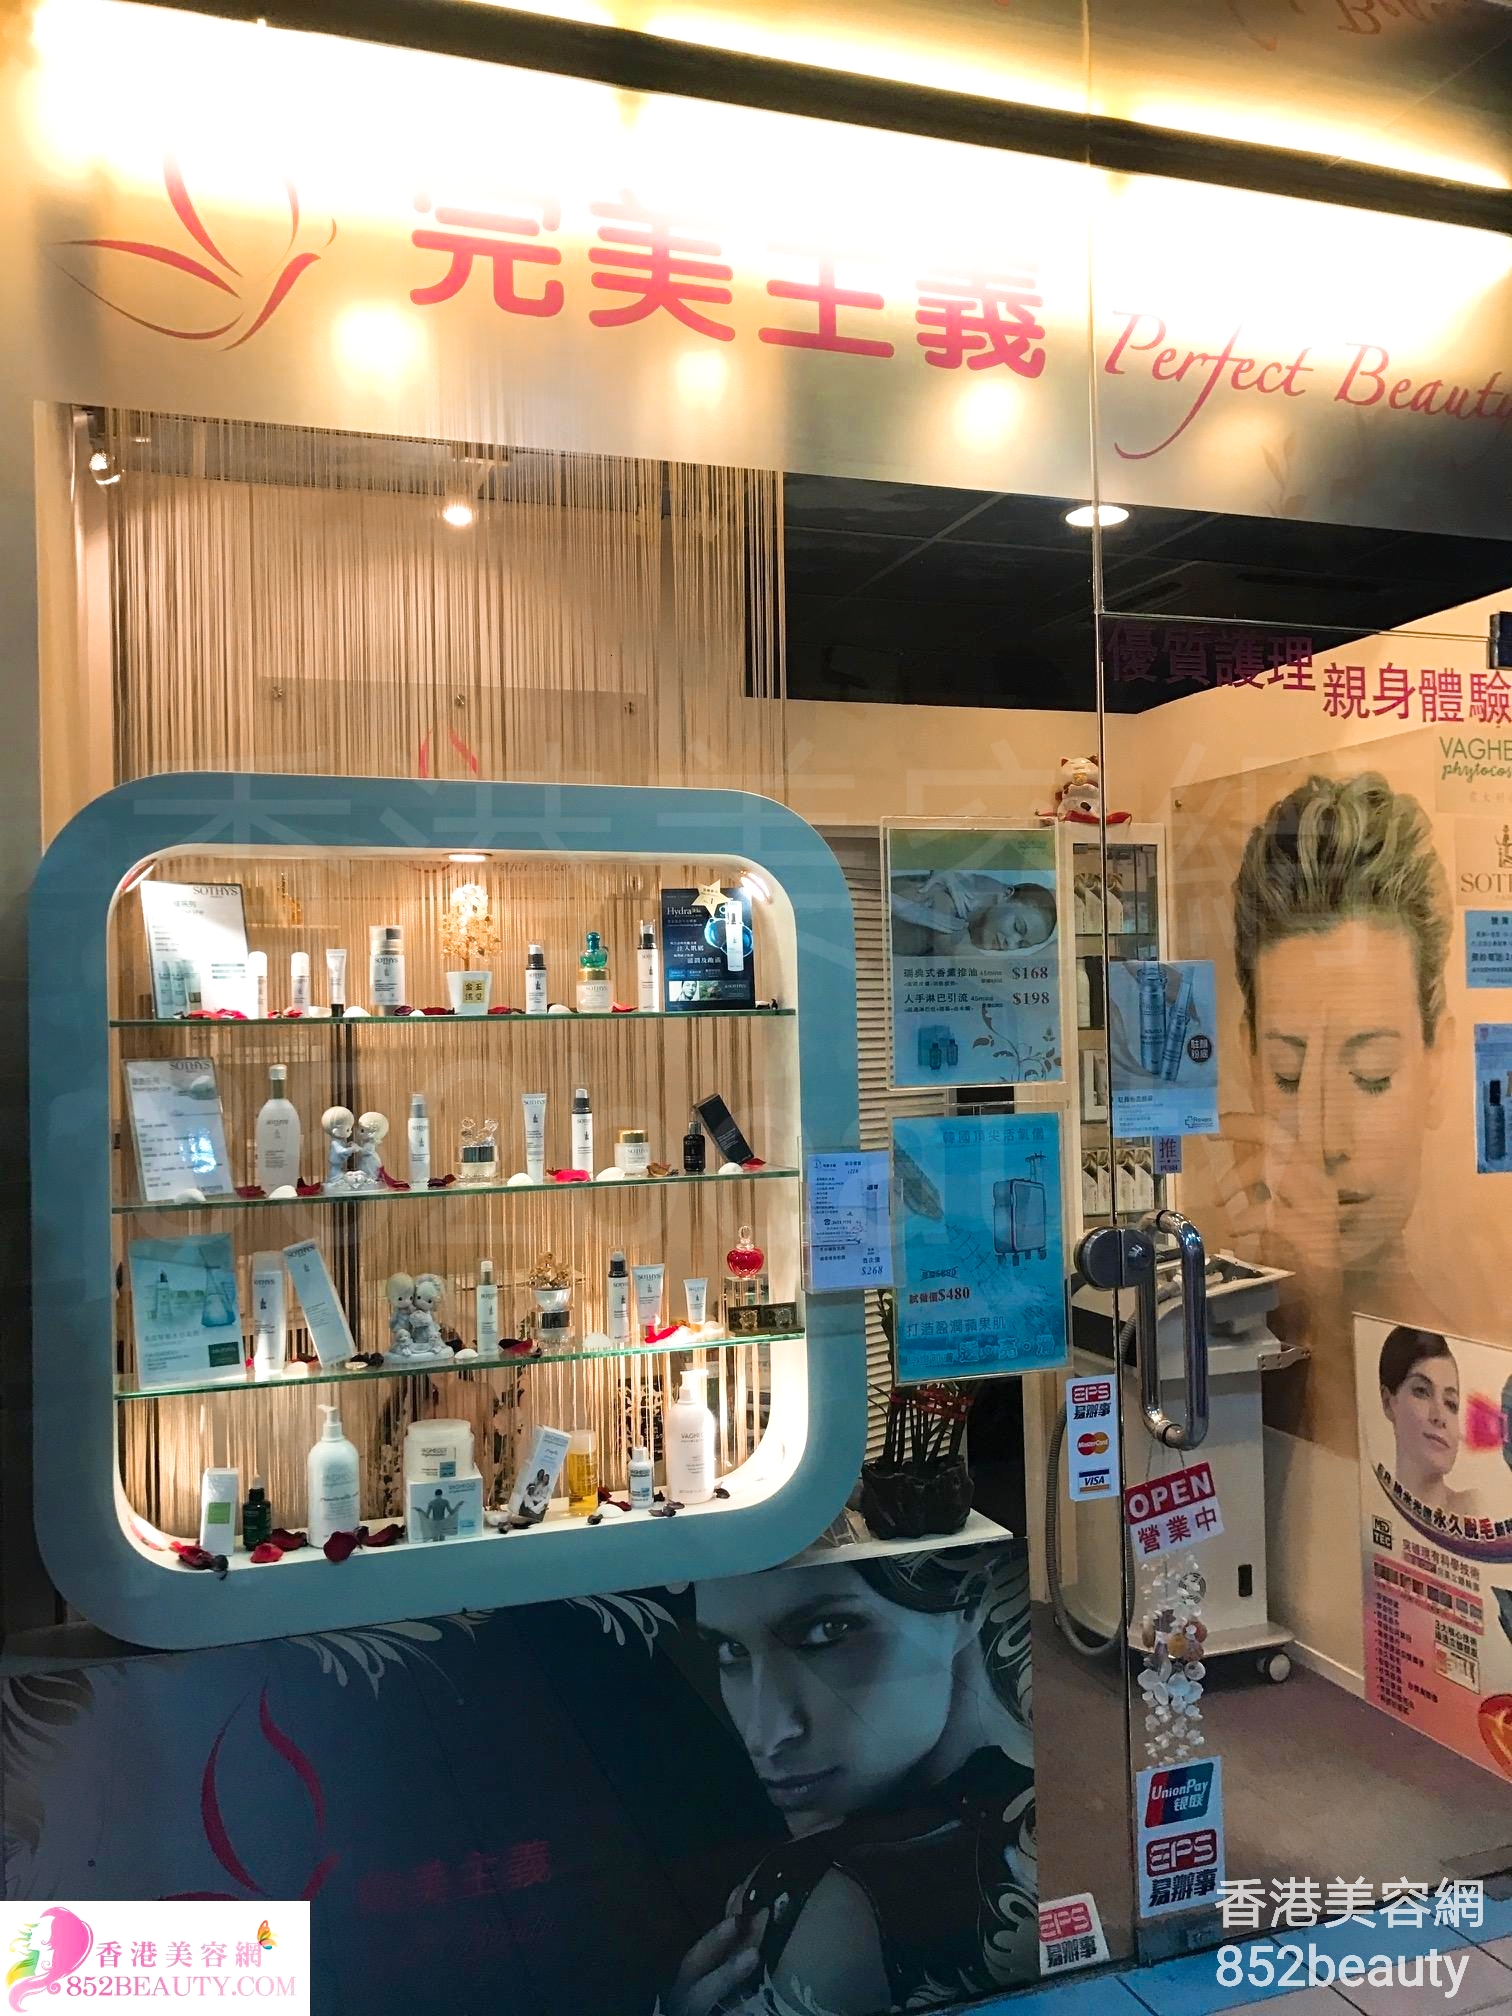 香港美容網 Hong Kong Beauty Salon 美容院 / 美容師: 完美主義 Perfect Beauty